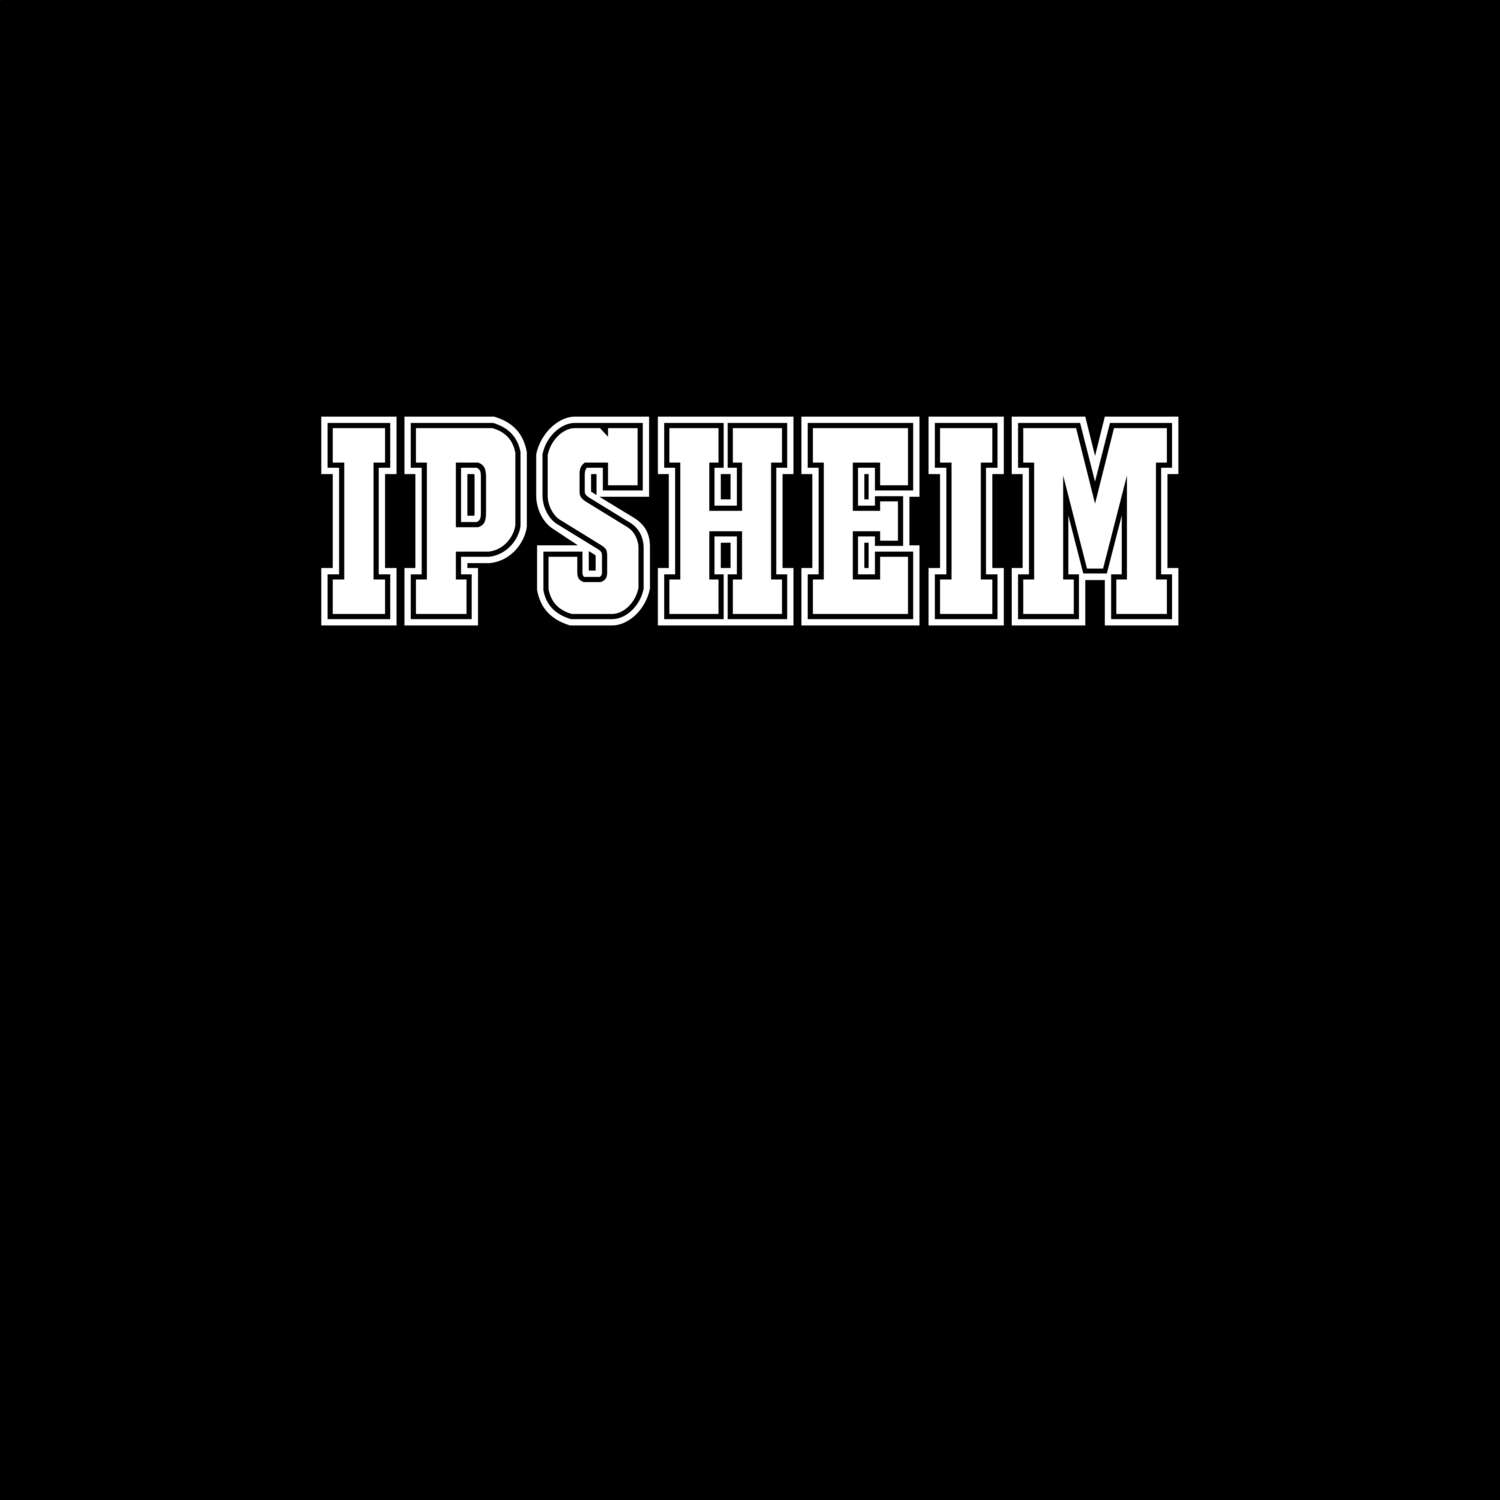 Ipsheim T-Shirt »Classic«